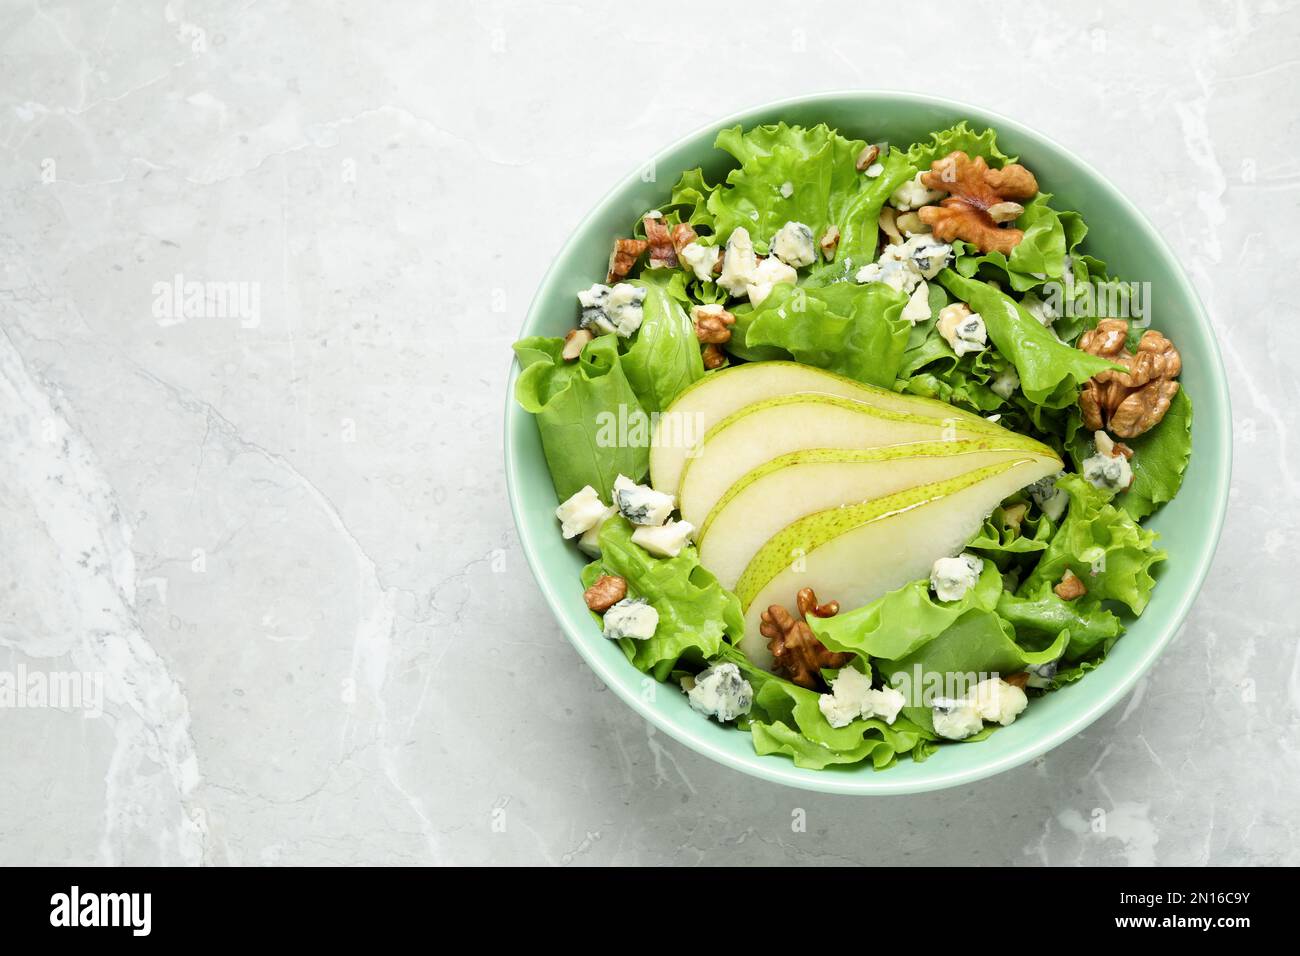 Salade savoureuse avec des tranches de poire sur une table en marbre gris clair, vue du dessus. Espace pour le texte Banque D'Images